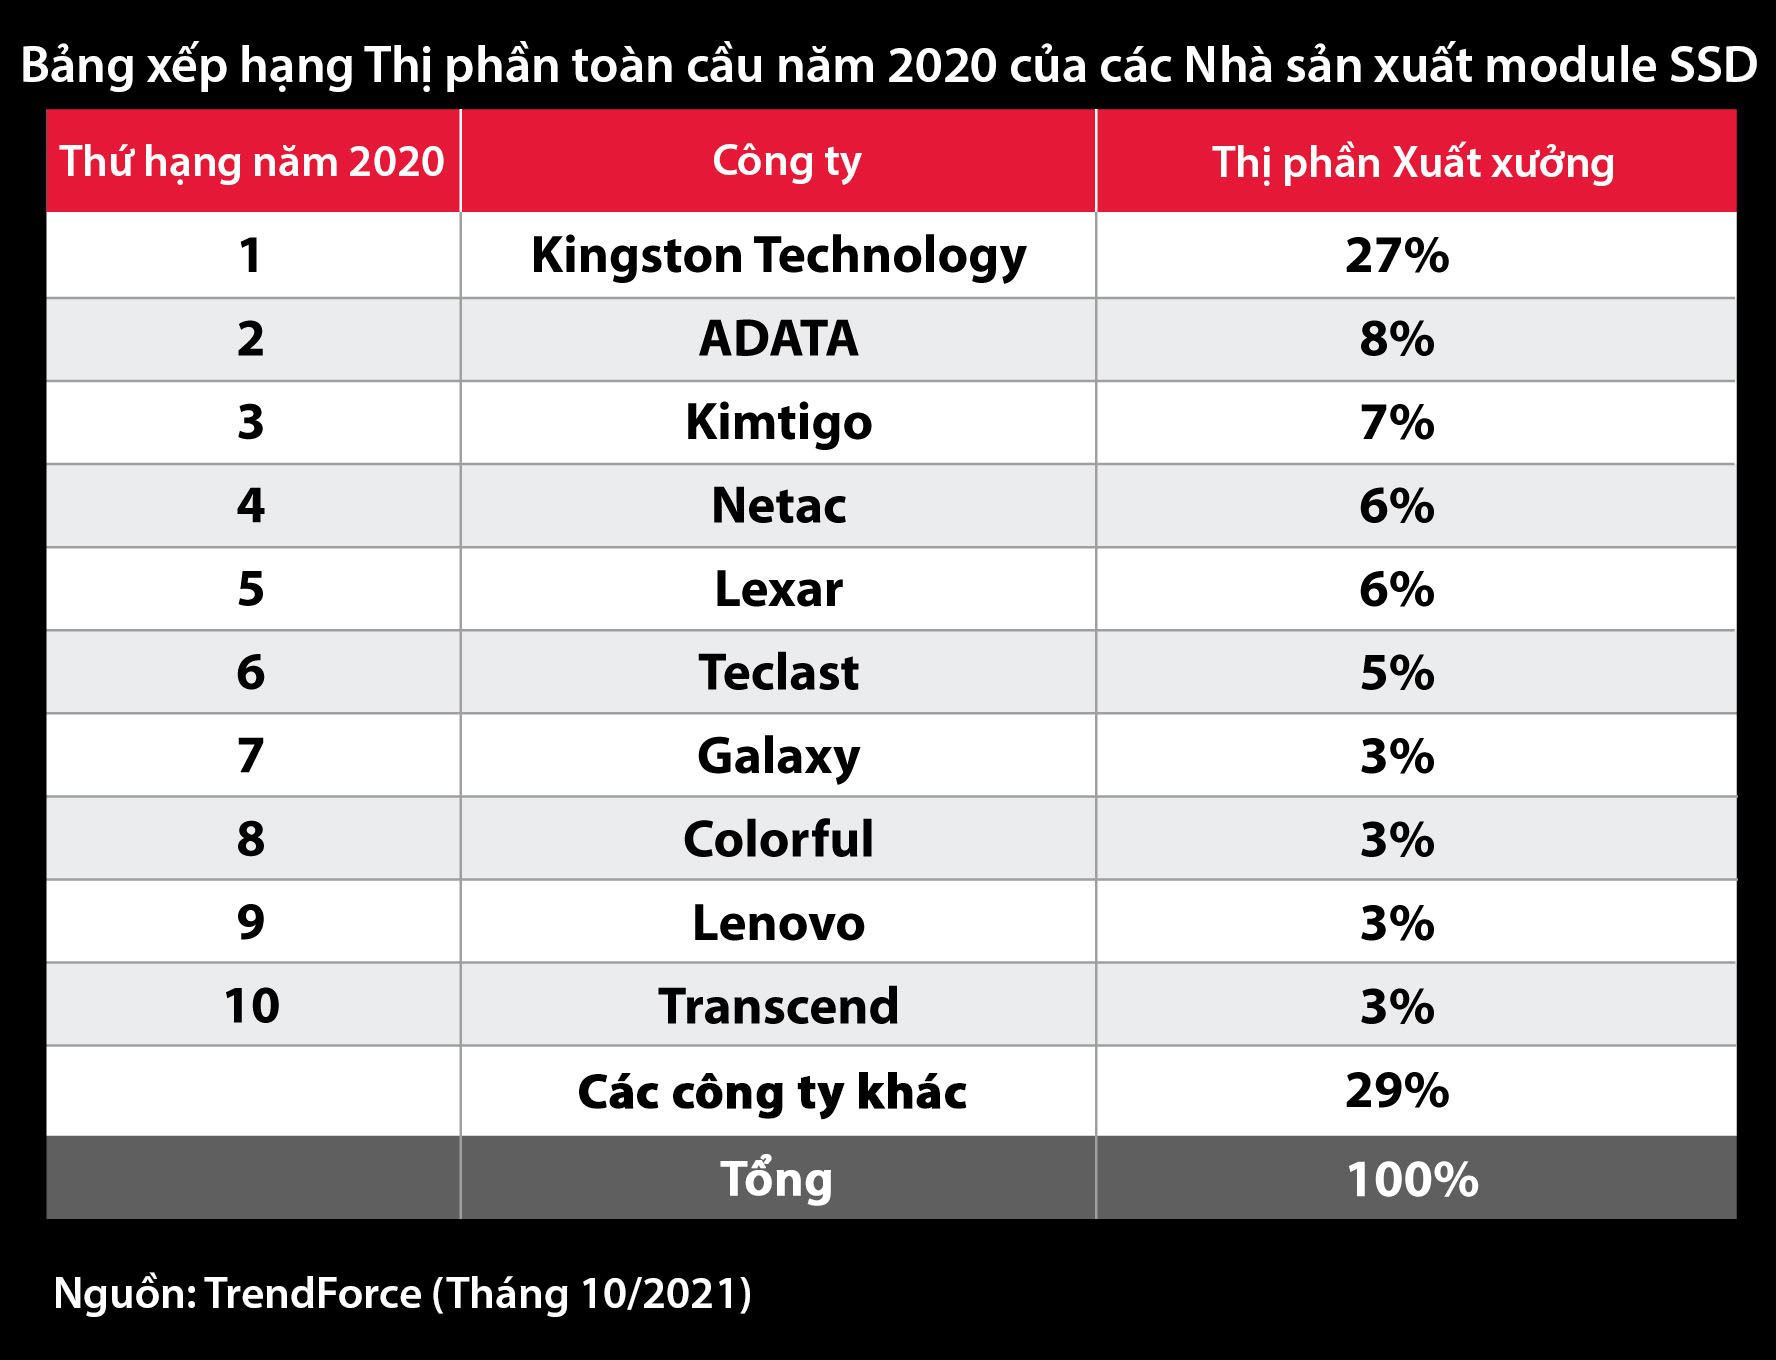 Kingston Technology dẫn đầu kênh phân phối SSD trong năm 2020